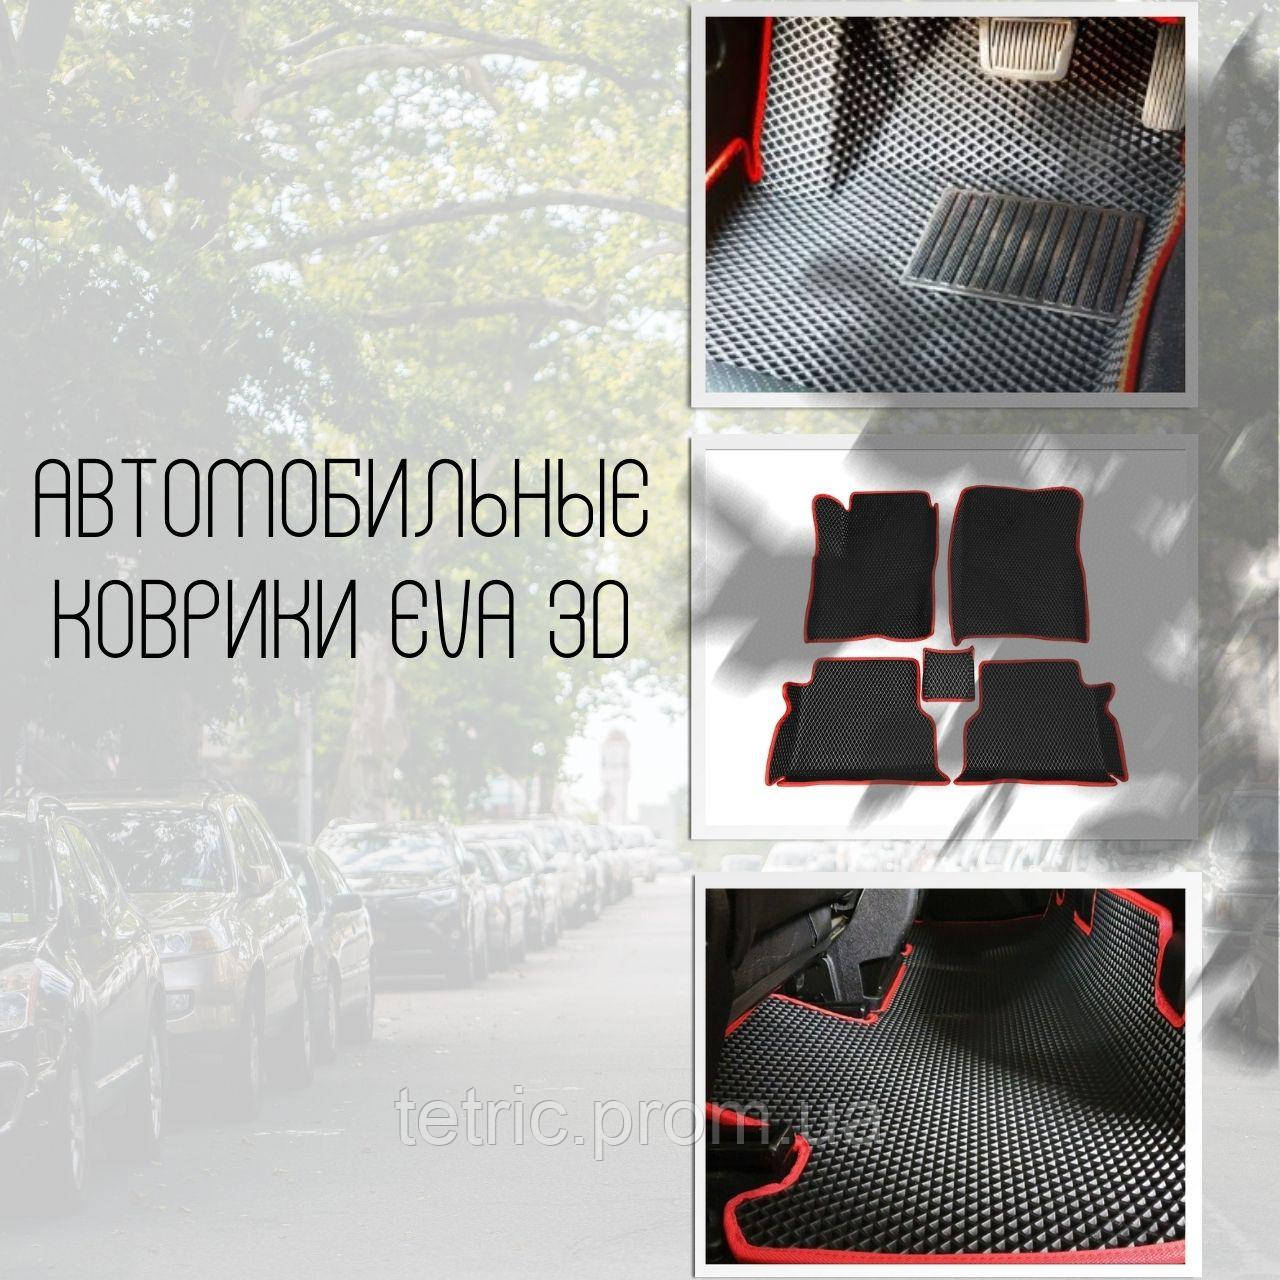 Автомобільні килимки EVA 3D на Audi 80 и Ауди 90 Килими в салон ева Ево Килимок в салон